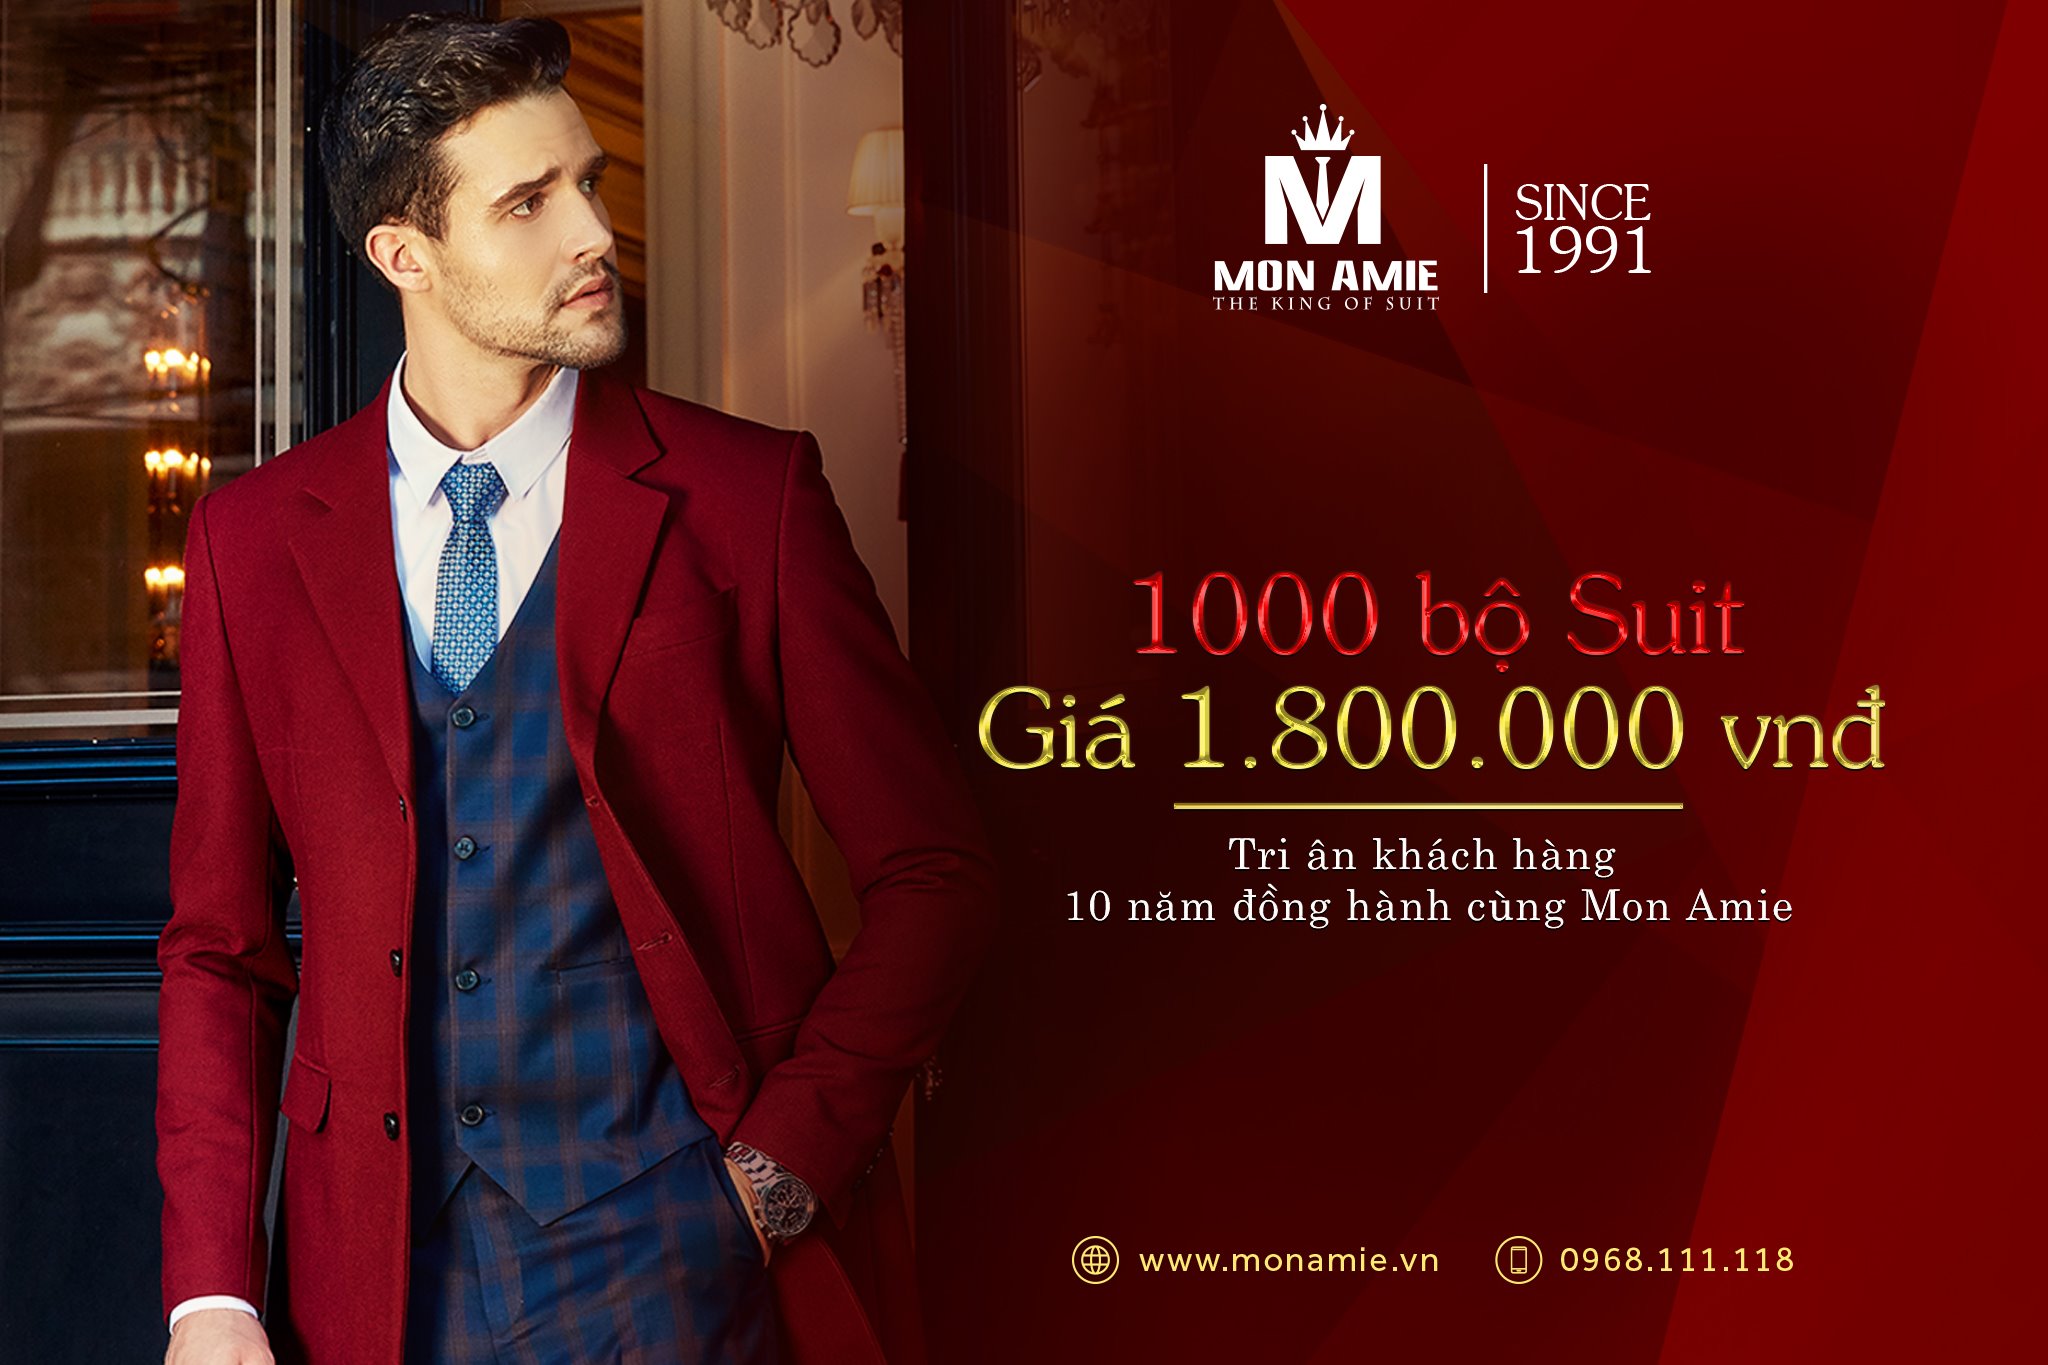 1000 bộ suit giá 1.800.000 - Tri ân khách hàng 10 năm đồng hành